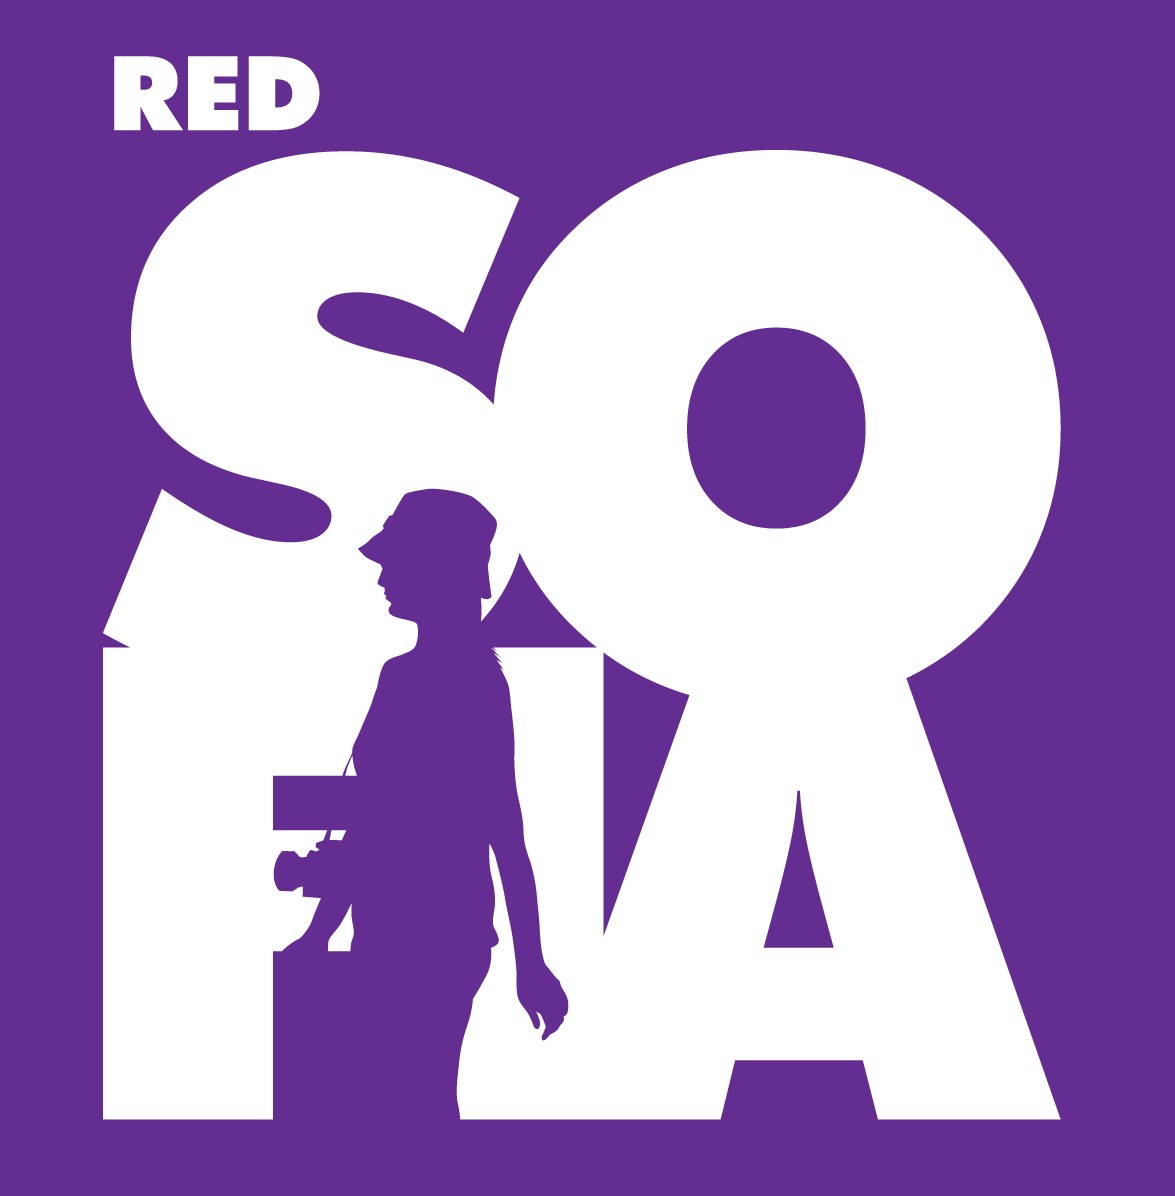 Logo de la campaña RED SOFIA